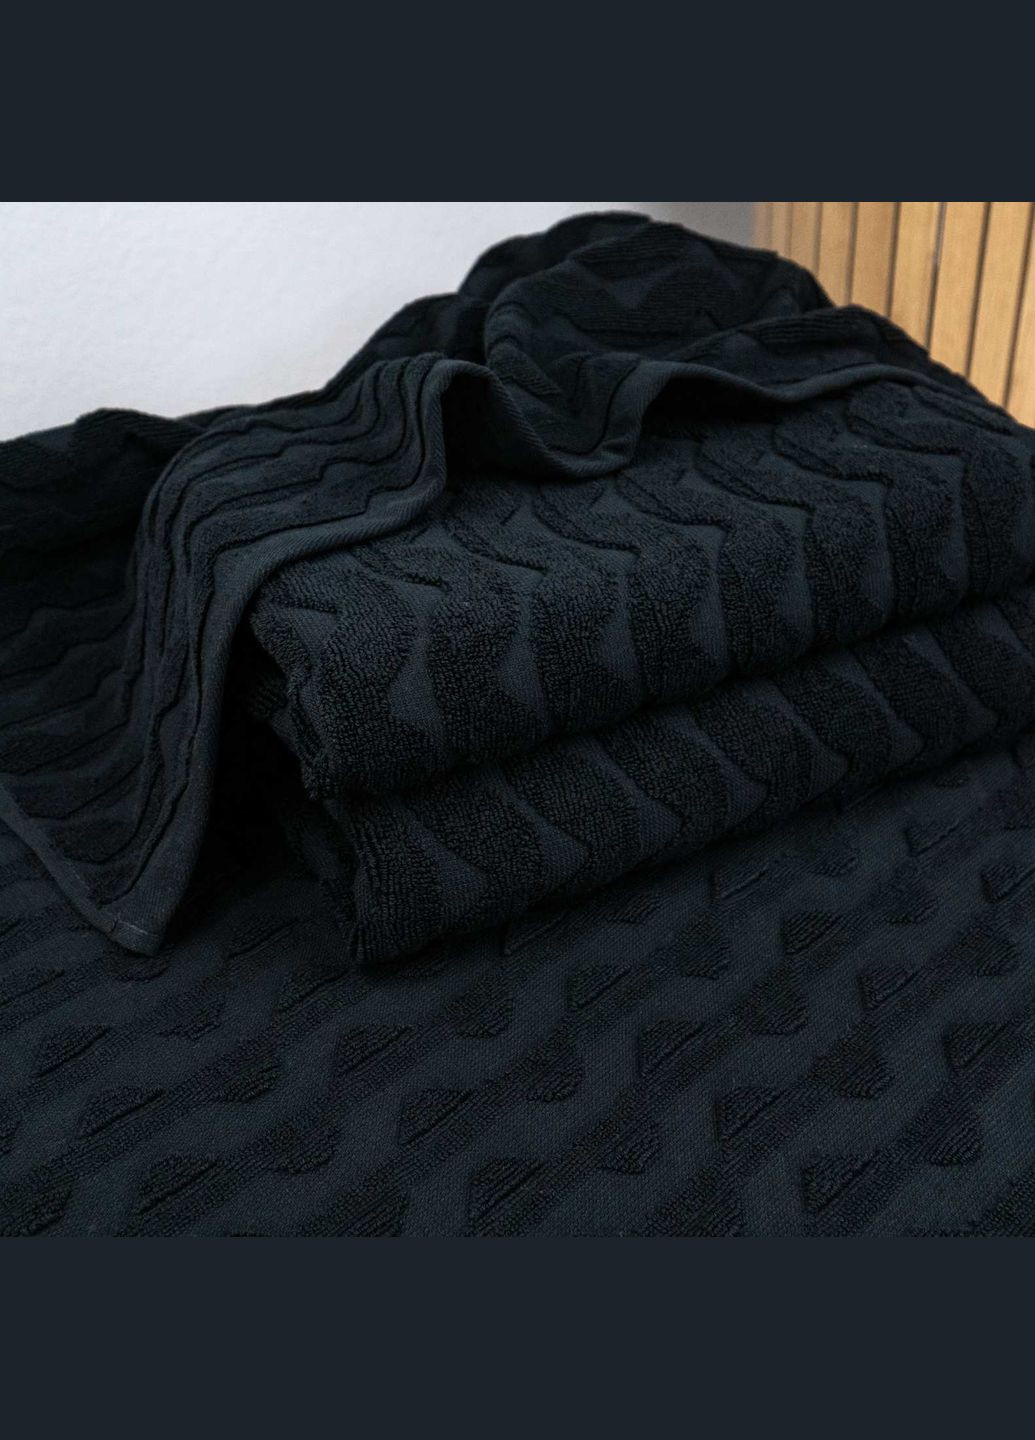 GM Textile махровое полотенце для лица и рук жаккардовое волна 50х90см 500г/м2 () черный производство -